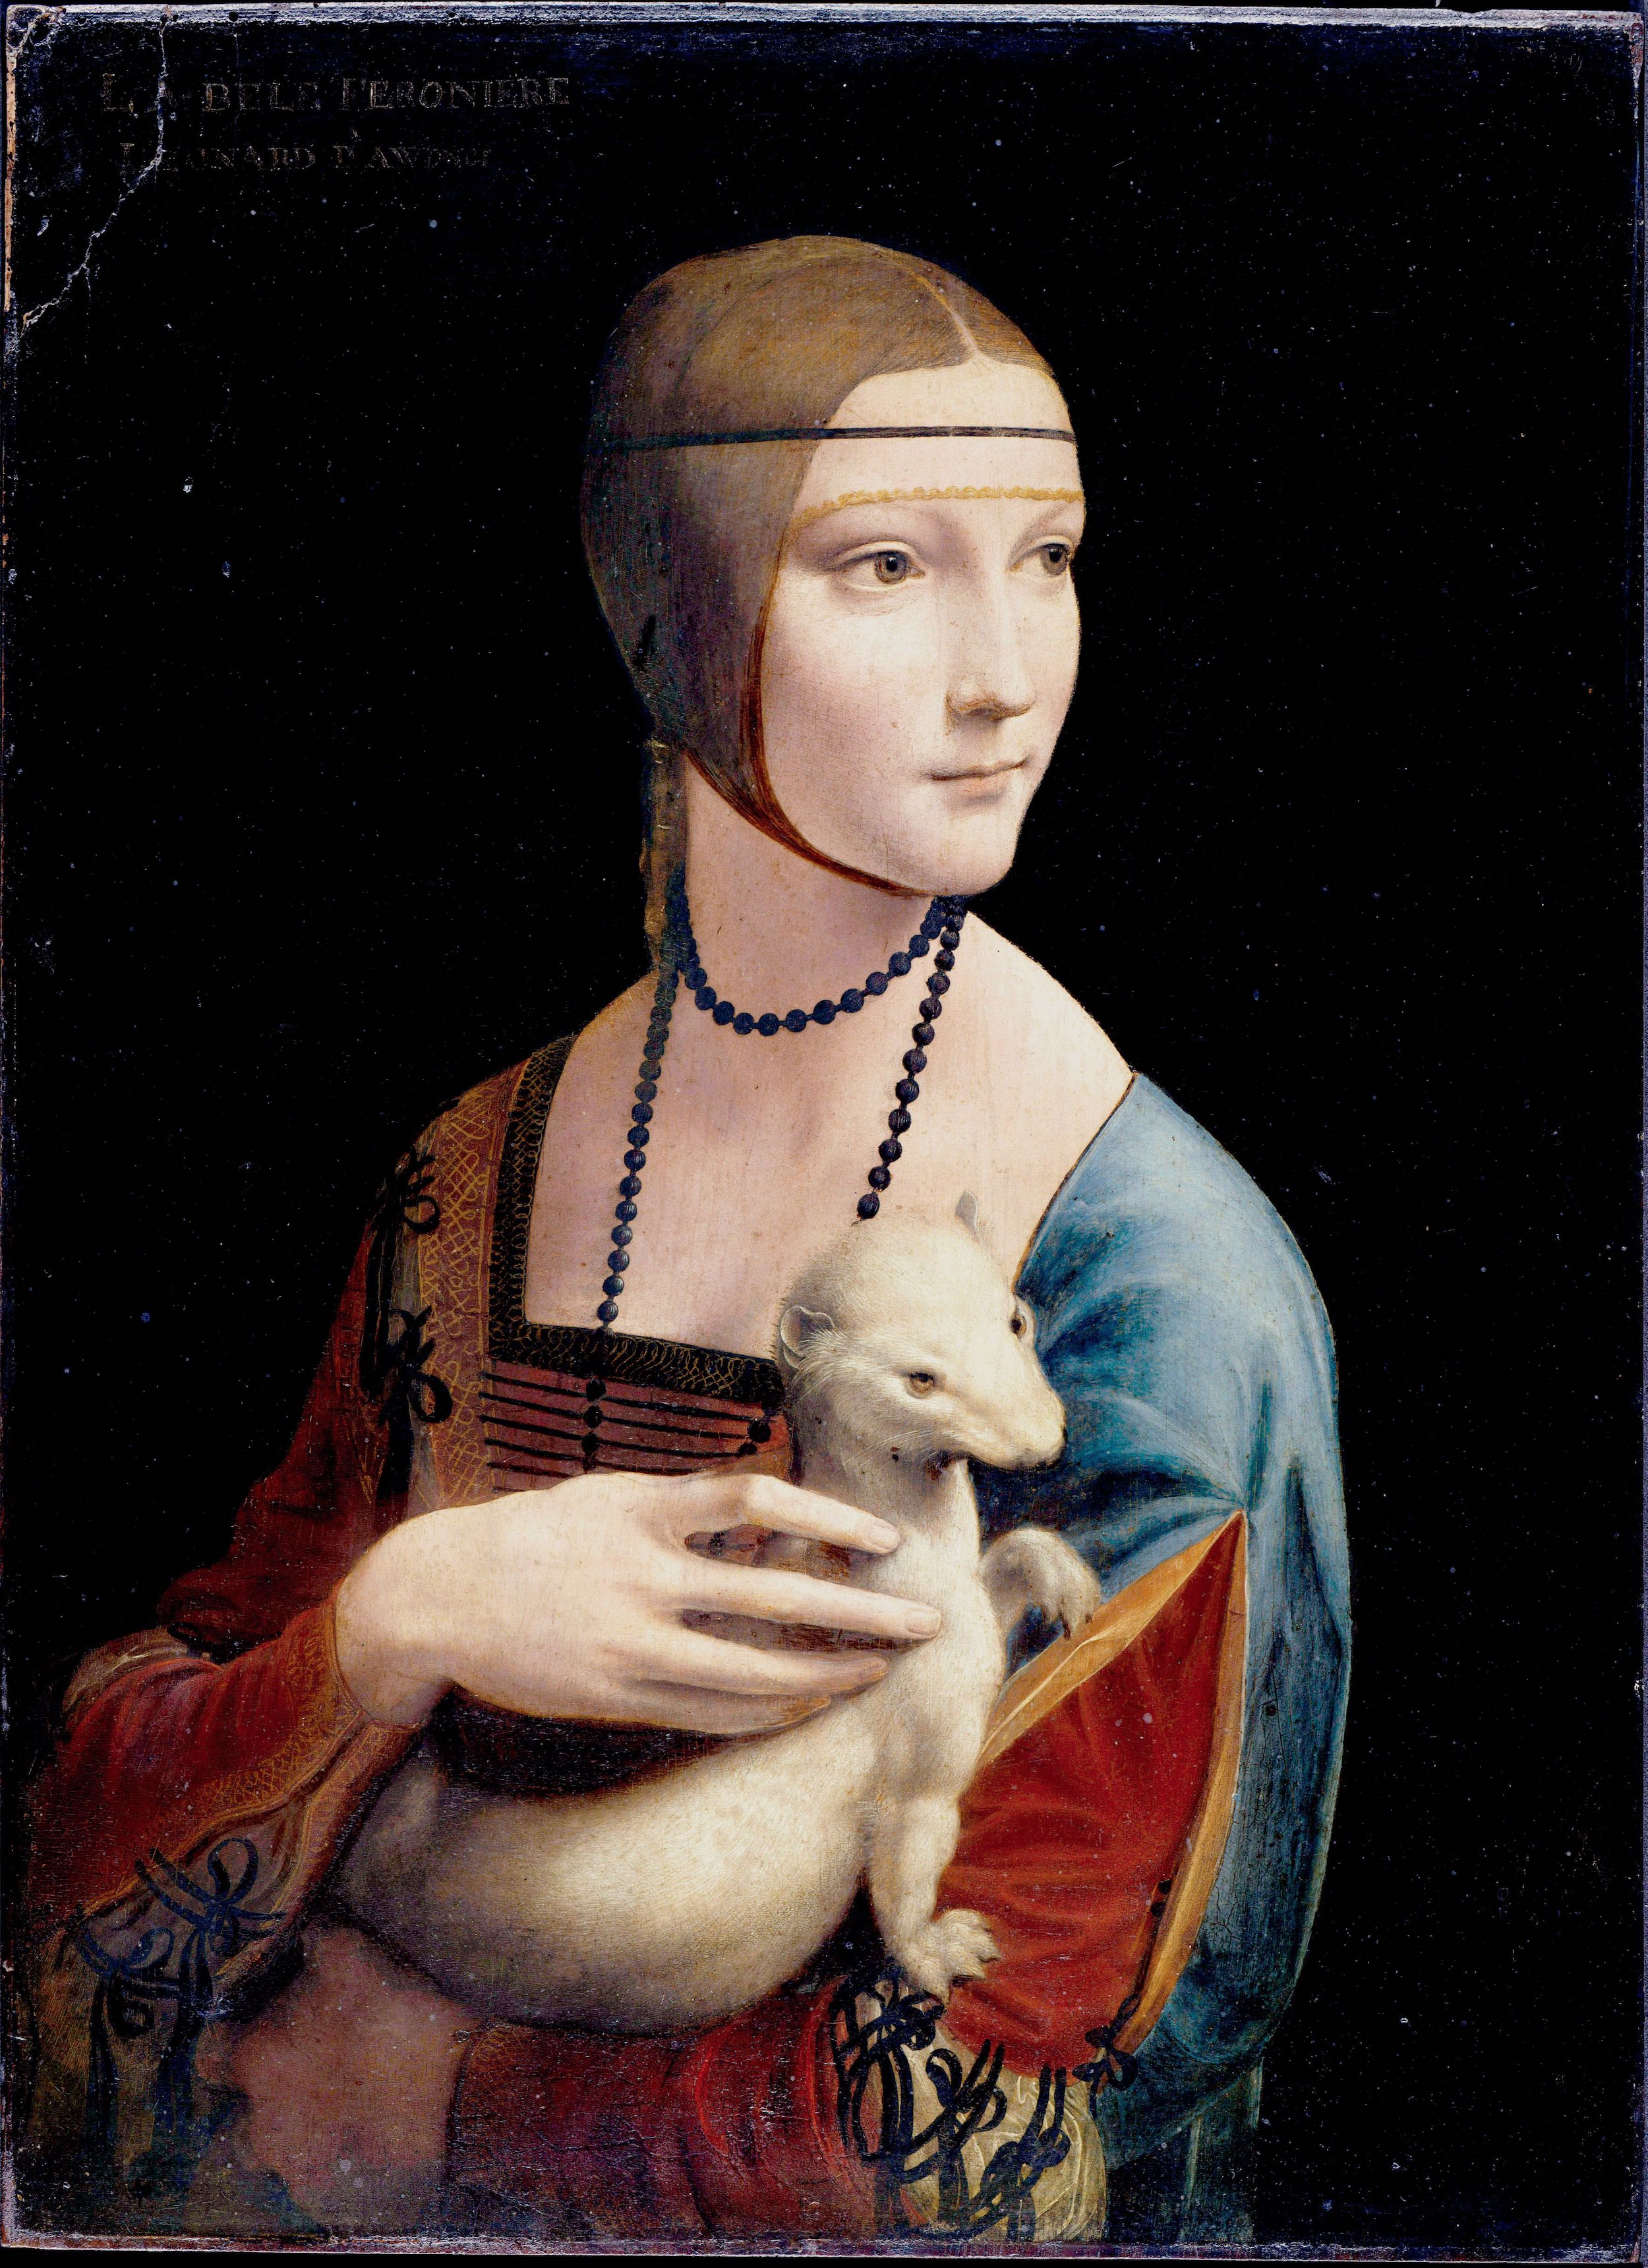 Lady with an Ermine by Leonardo da Vinci - 1489–1490 - 54 cm x 39 cm Czartoryski Museum, Krakow